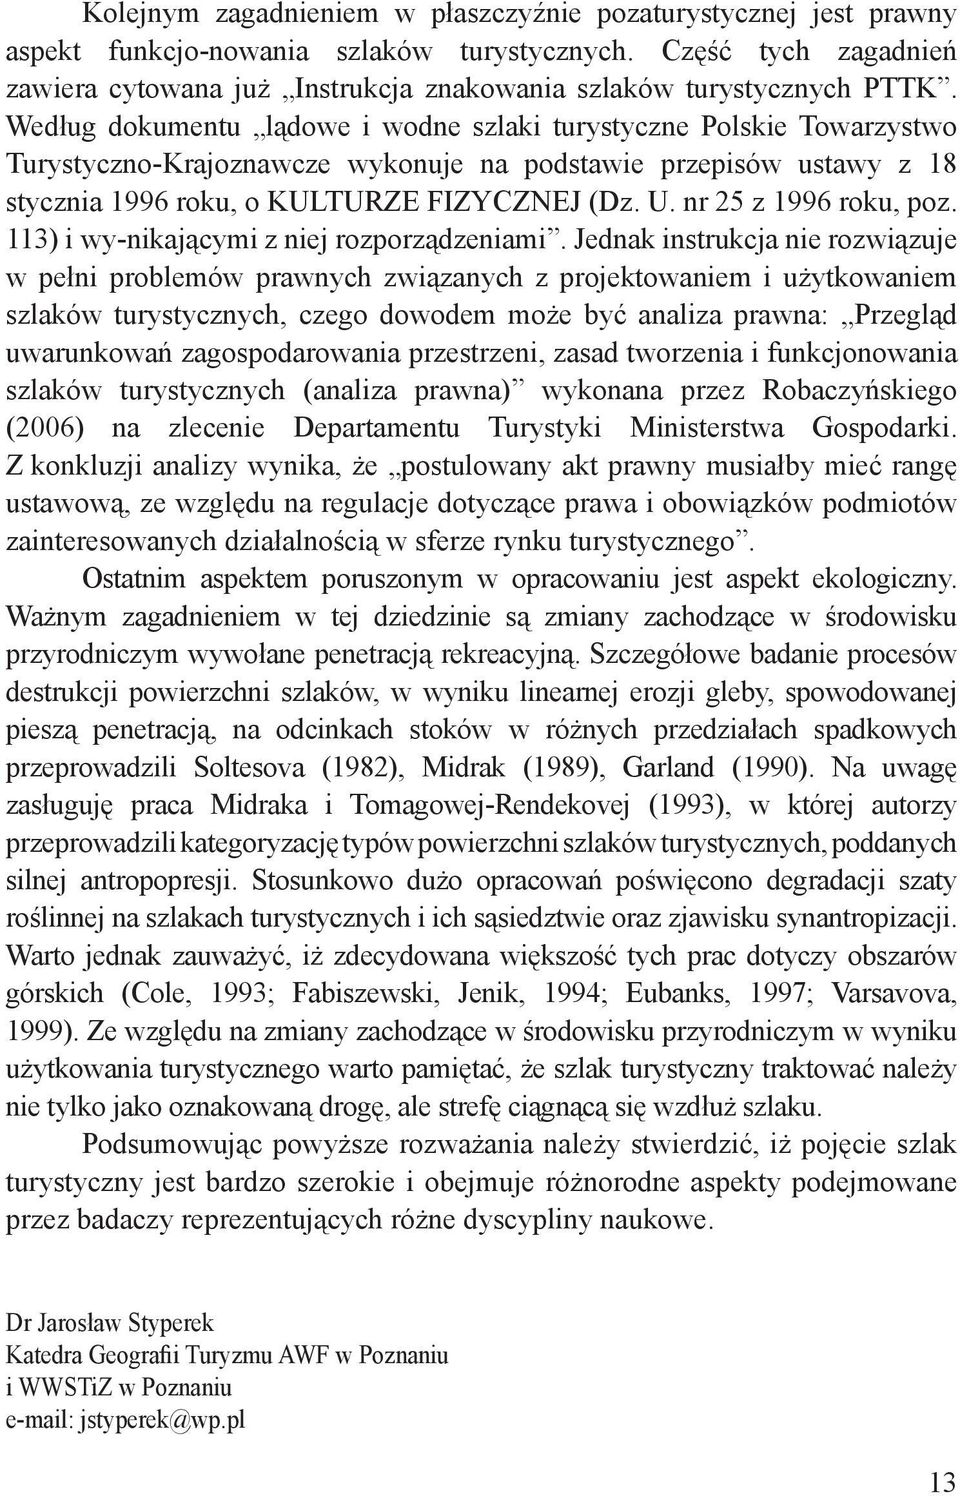 Według dokumentu lądowe i wodne szlaki turystyczne Polskie Towarzystwo Turystyczno-Krajoznawcze wykonuje na podstawie przepisów ustawy z 18 stycznia 1996 roku, o KULTURZE FIZYCZNEJ (Dz. U.